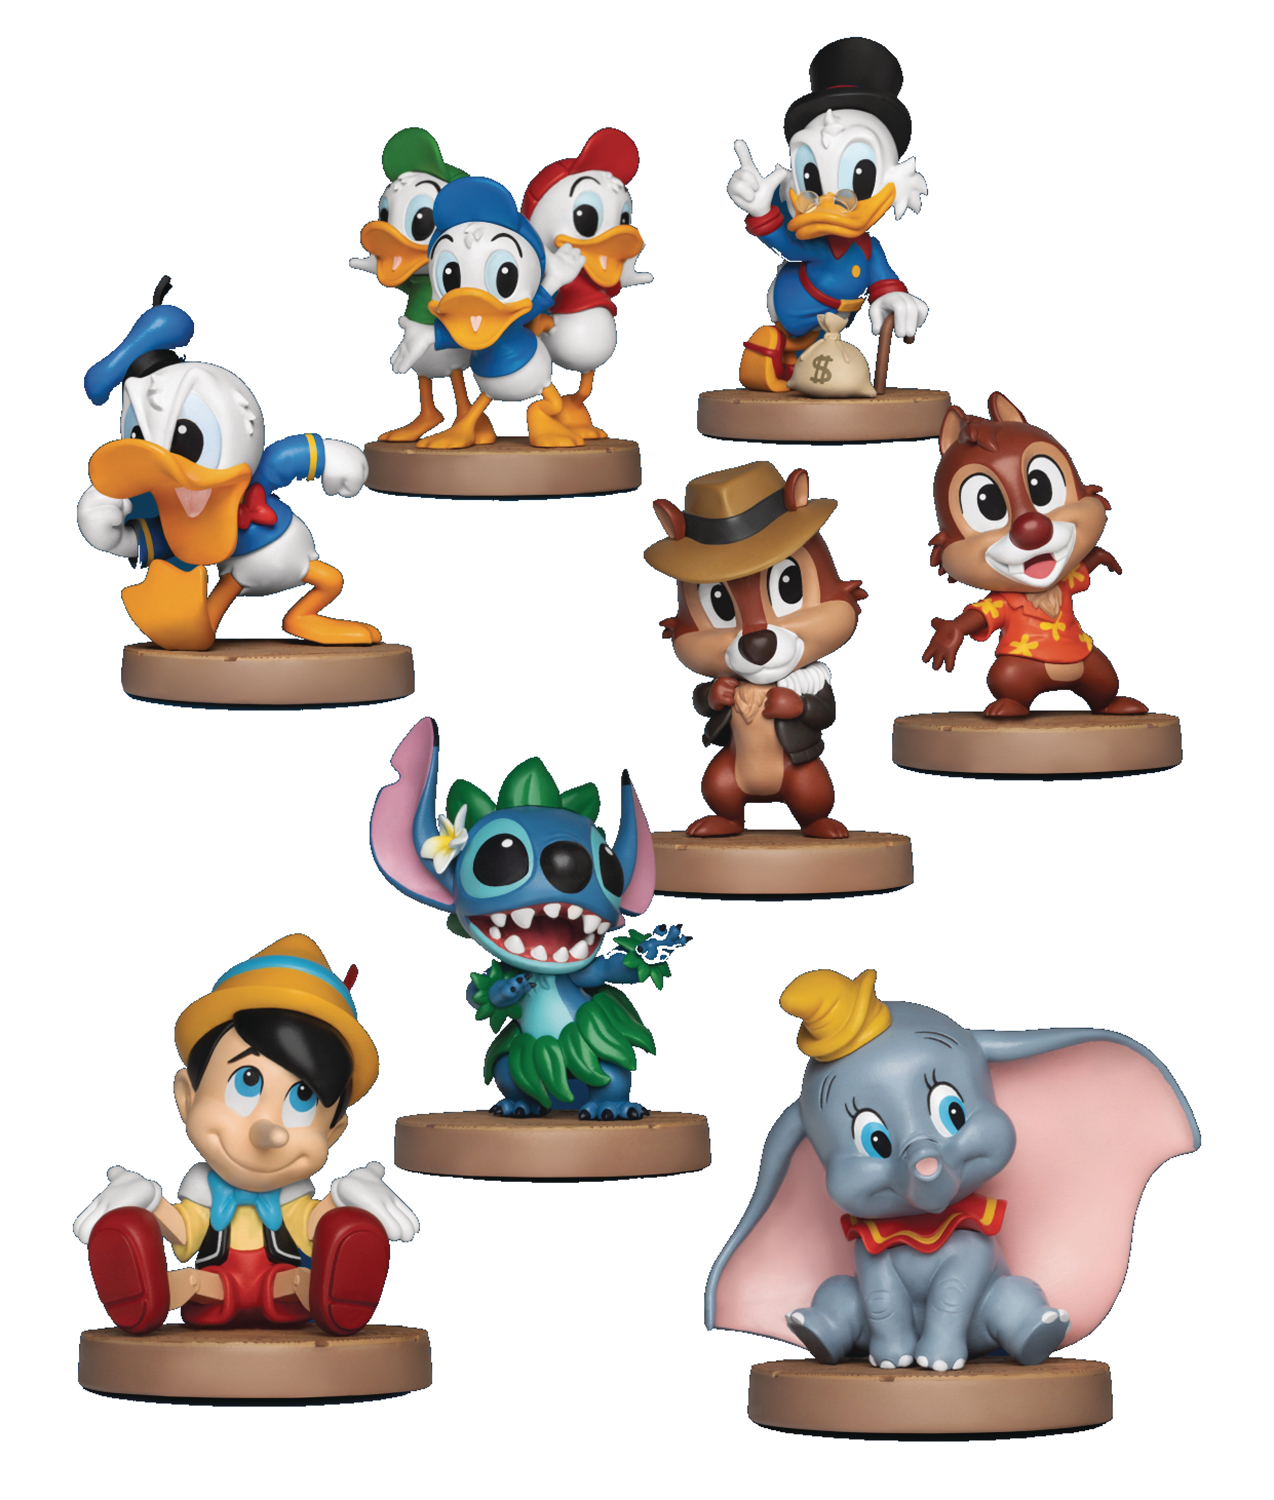 Disney Classic Series Mea-019 8 Piece Figure Set